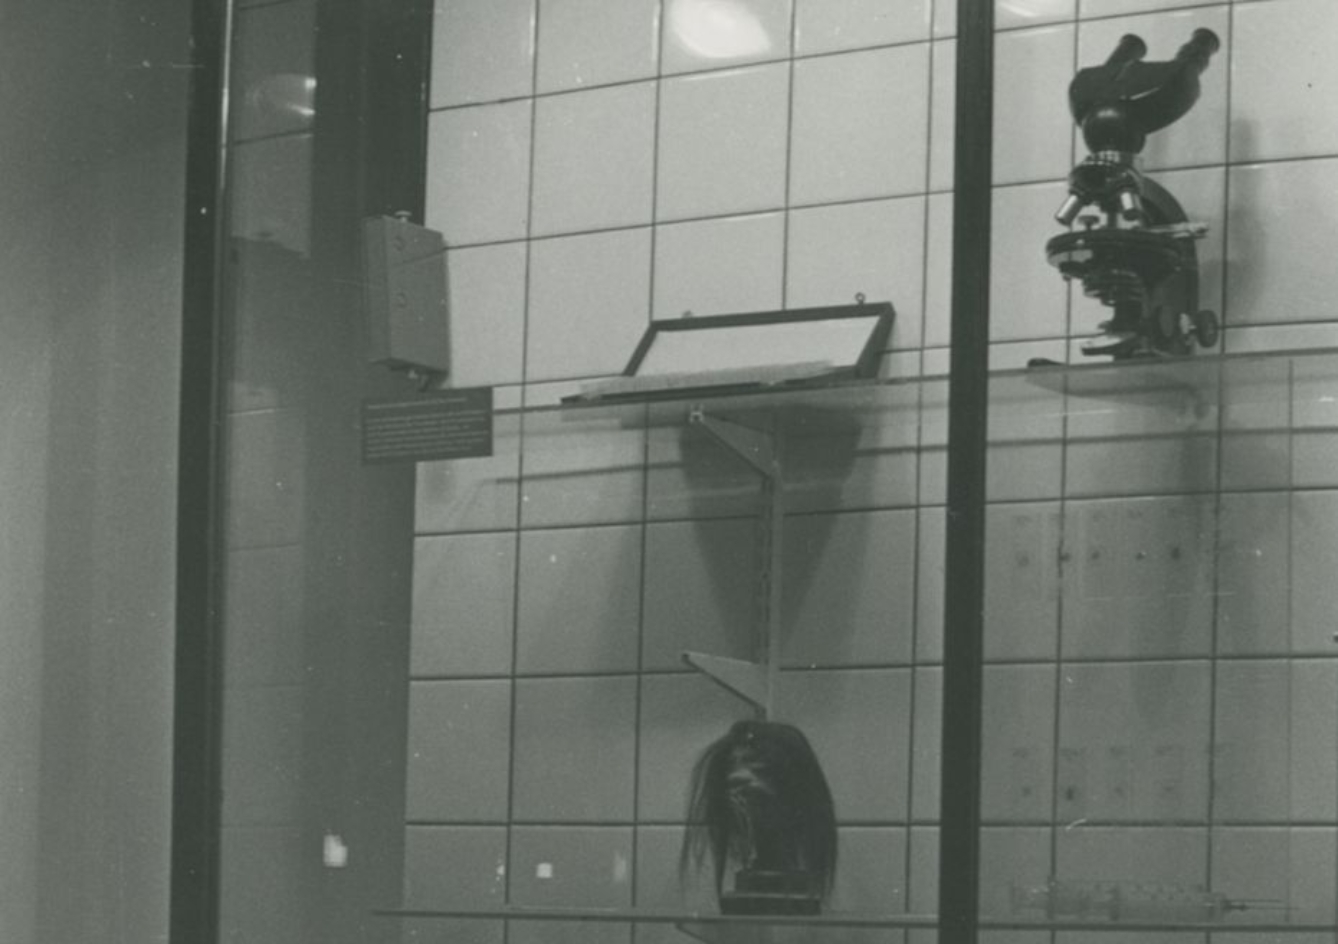 Zusehen ist eine Austellungswand in der Ausstellung von 1985 der Nationalen Mahn- und Gedenkstätte der DDR. Unten im Bildausschnitt ist ein Schrupfkopf zu erkennen.